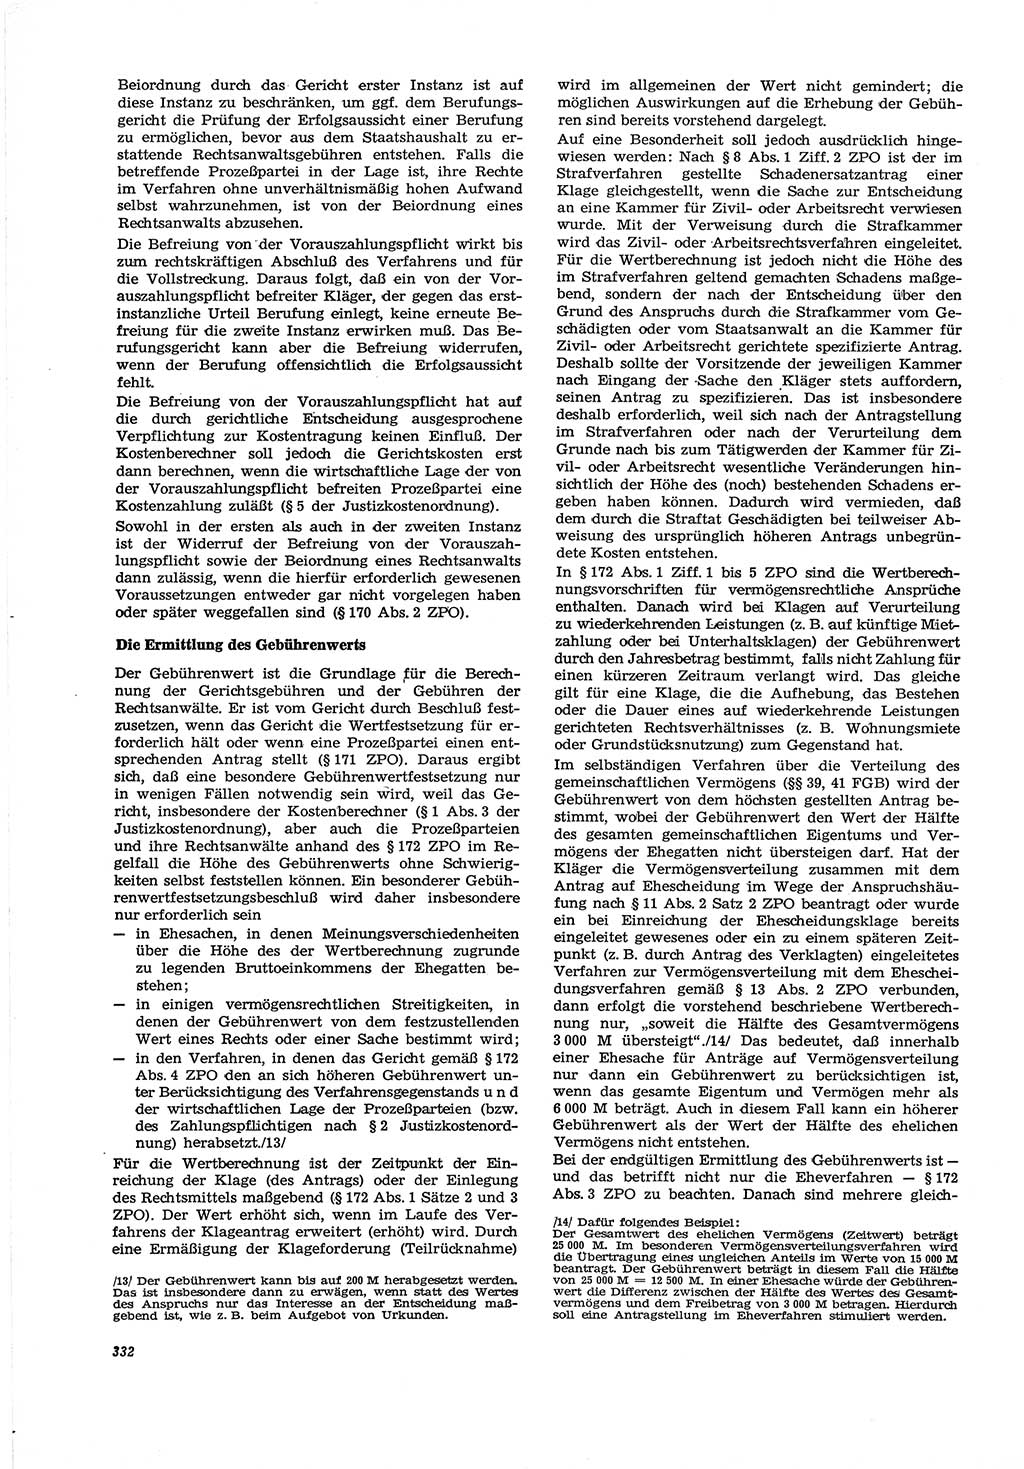 Neue Justiz (NJ), Zeitschrift für Recht und Rechtswissenschaft [Deutsche Demokratische Republik (DDR)], 30. Jahrgang 1976, Seite 332 (NJ DDR 1976, S. 332)